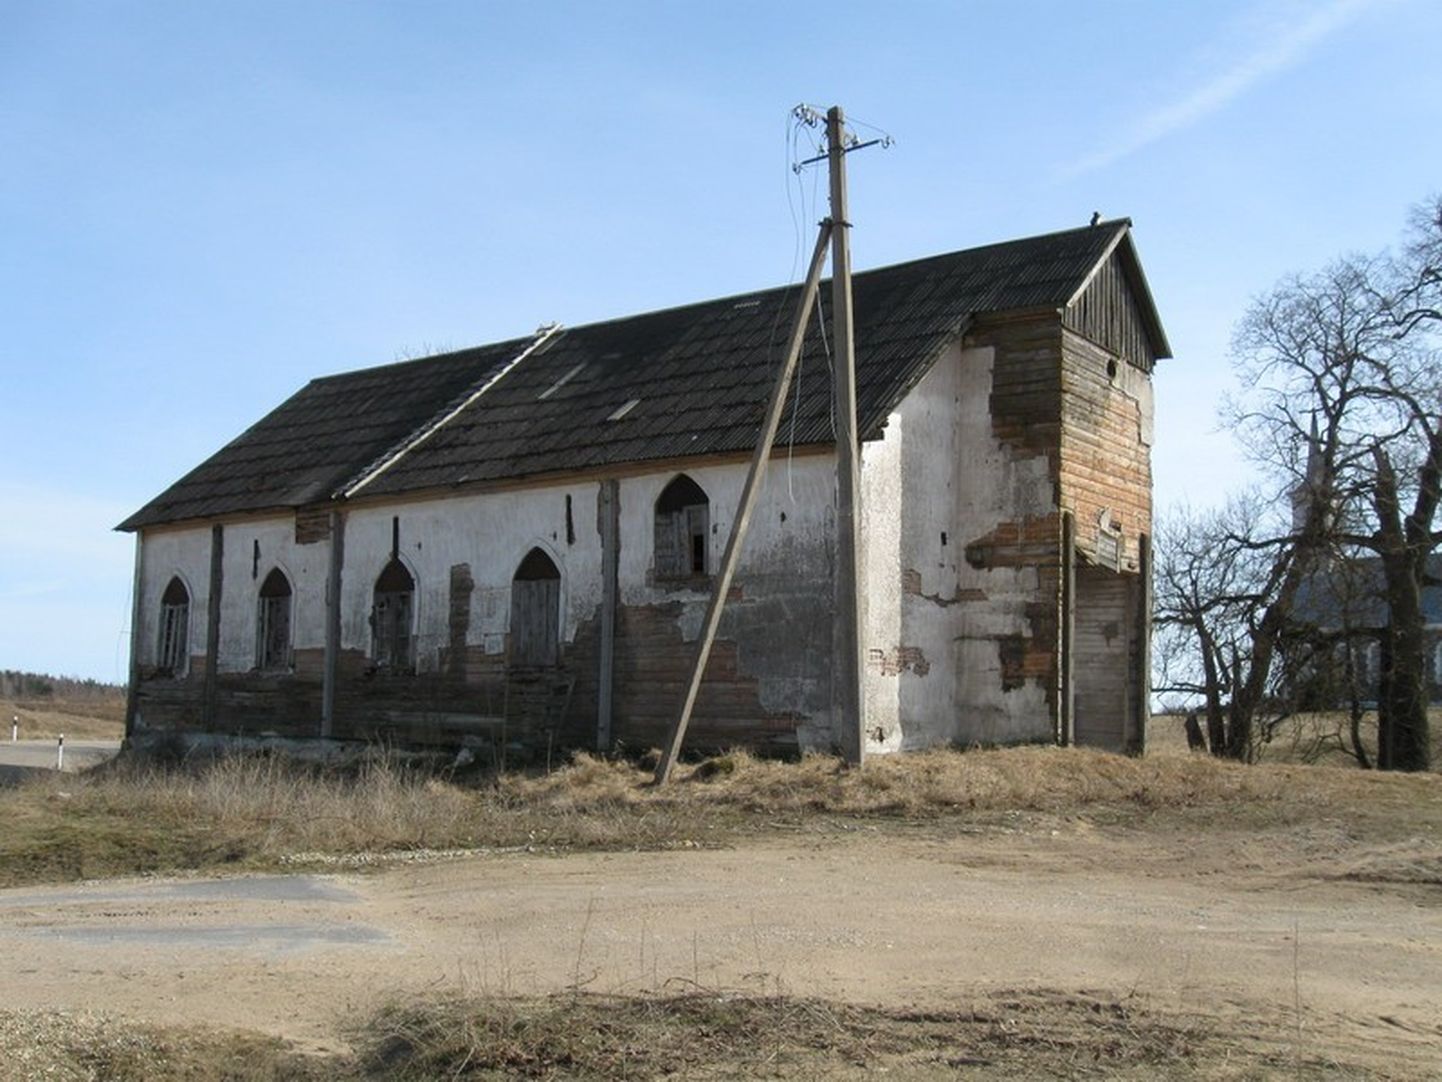 Сейчас старая тудулиннаская церковь выглядит почти так же, как на этом фотоснимке десятилетней давности.